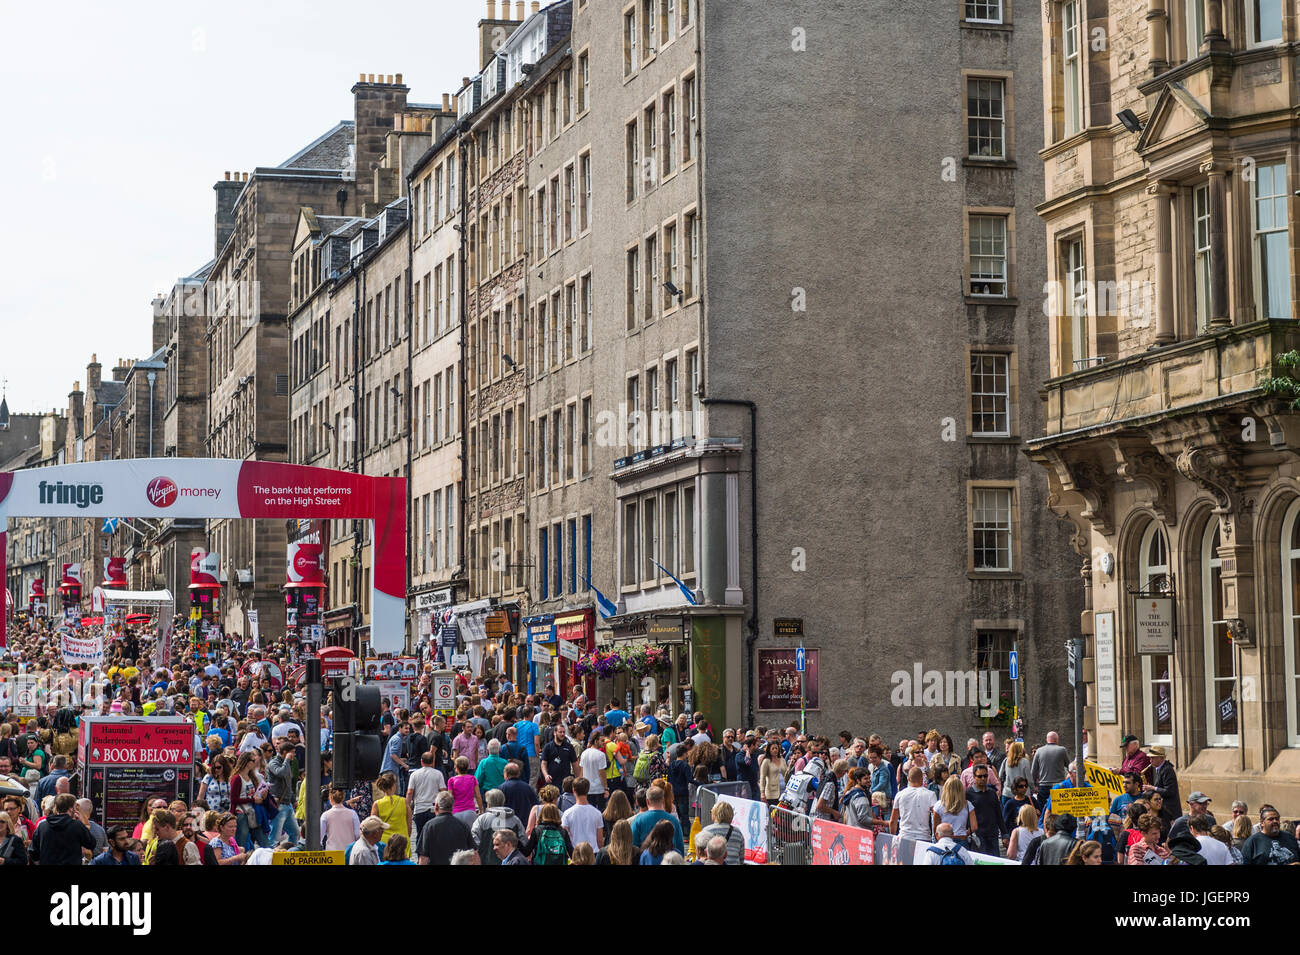 Edinburgh, Scotland, UK - 8. August 2015: Mitglieder der Öffentlichkeit auf der Royal Mile, Edinburgh Stockfoto